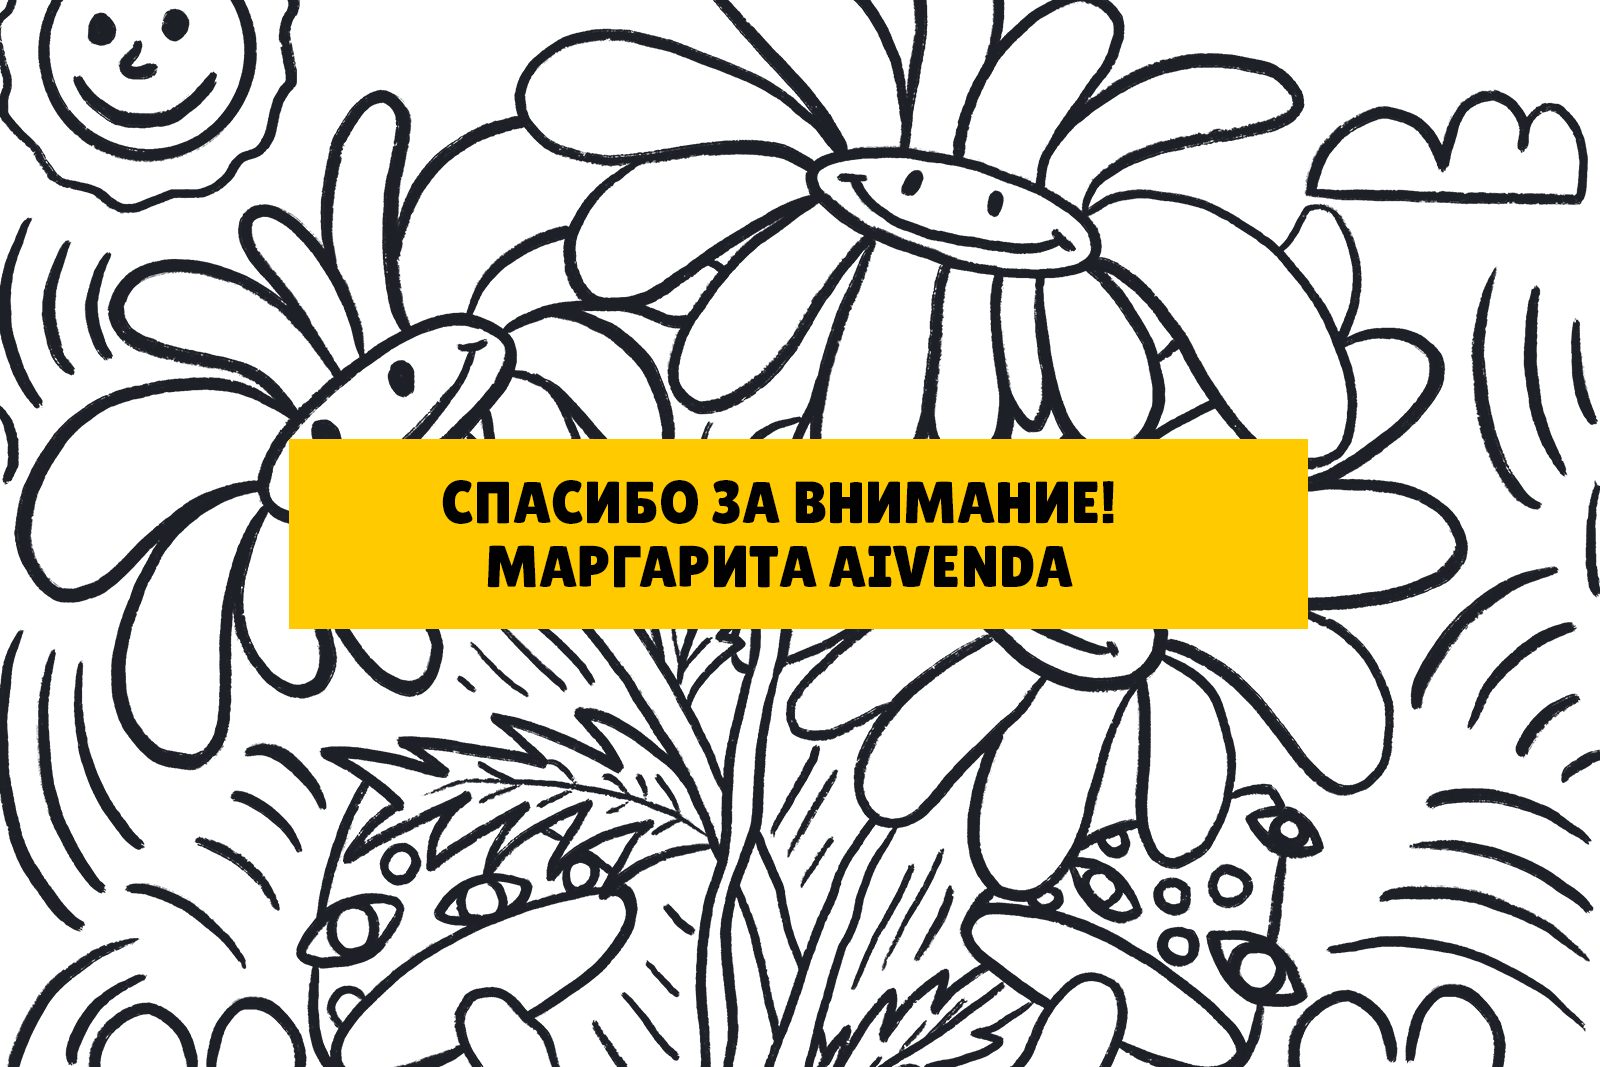 Упаковка для лимонадов с яркими грибами — Изображение №7 — Иллюстрация, Графика на Dprofile